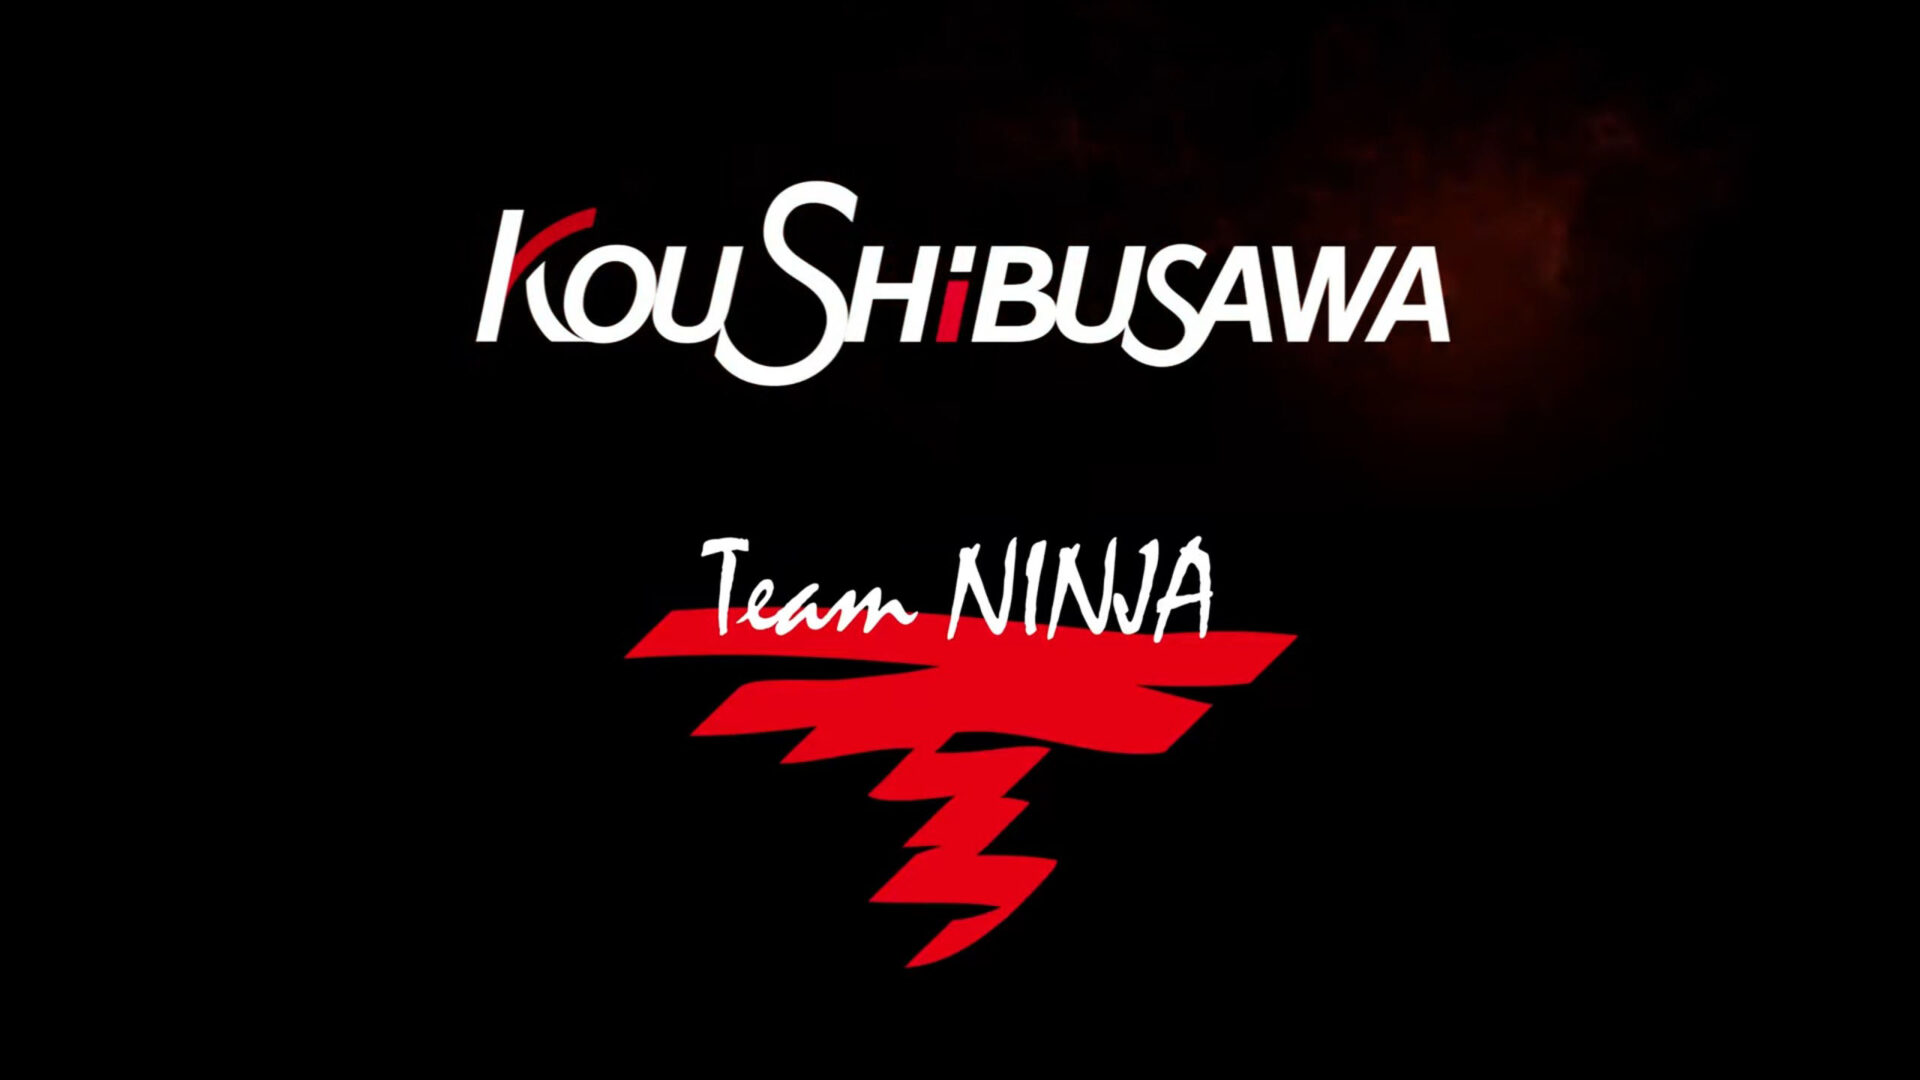 Kou Shibusawa x Team Ninja